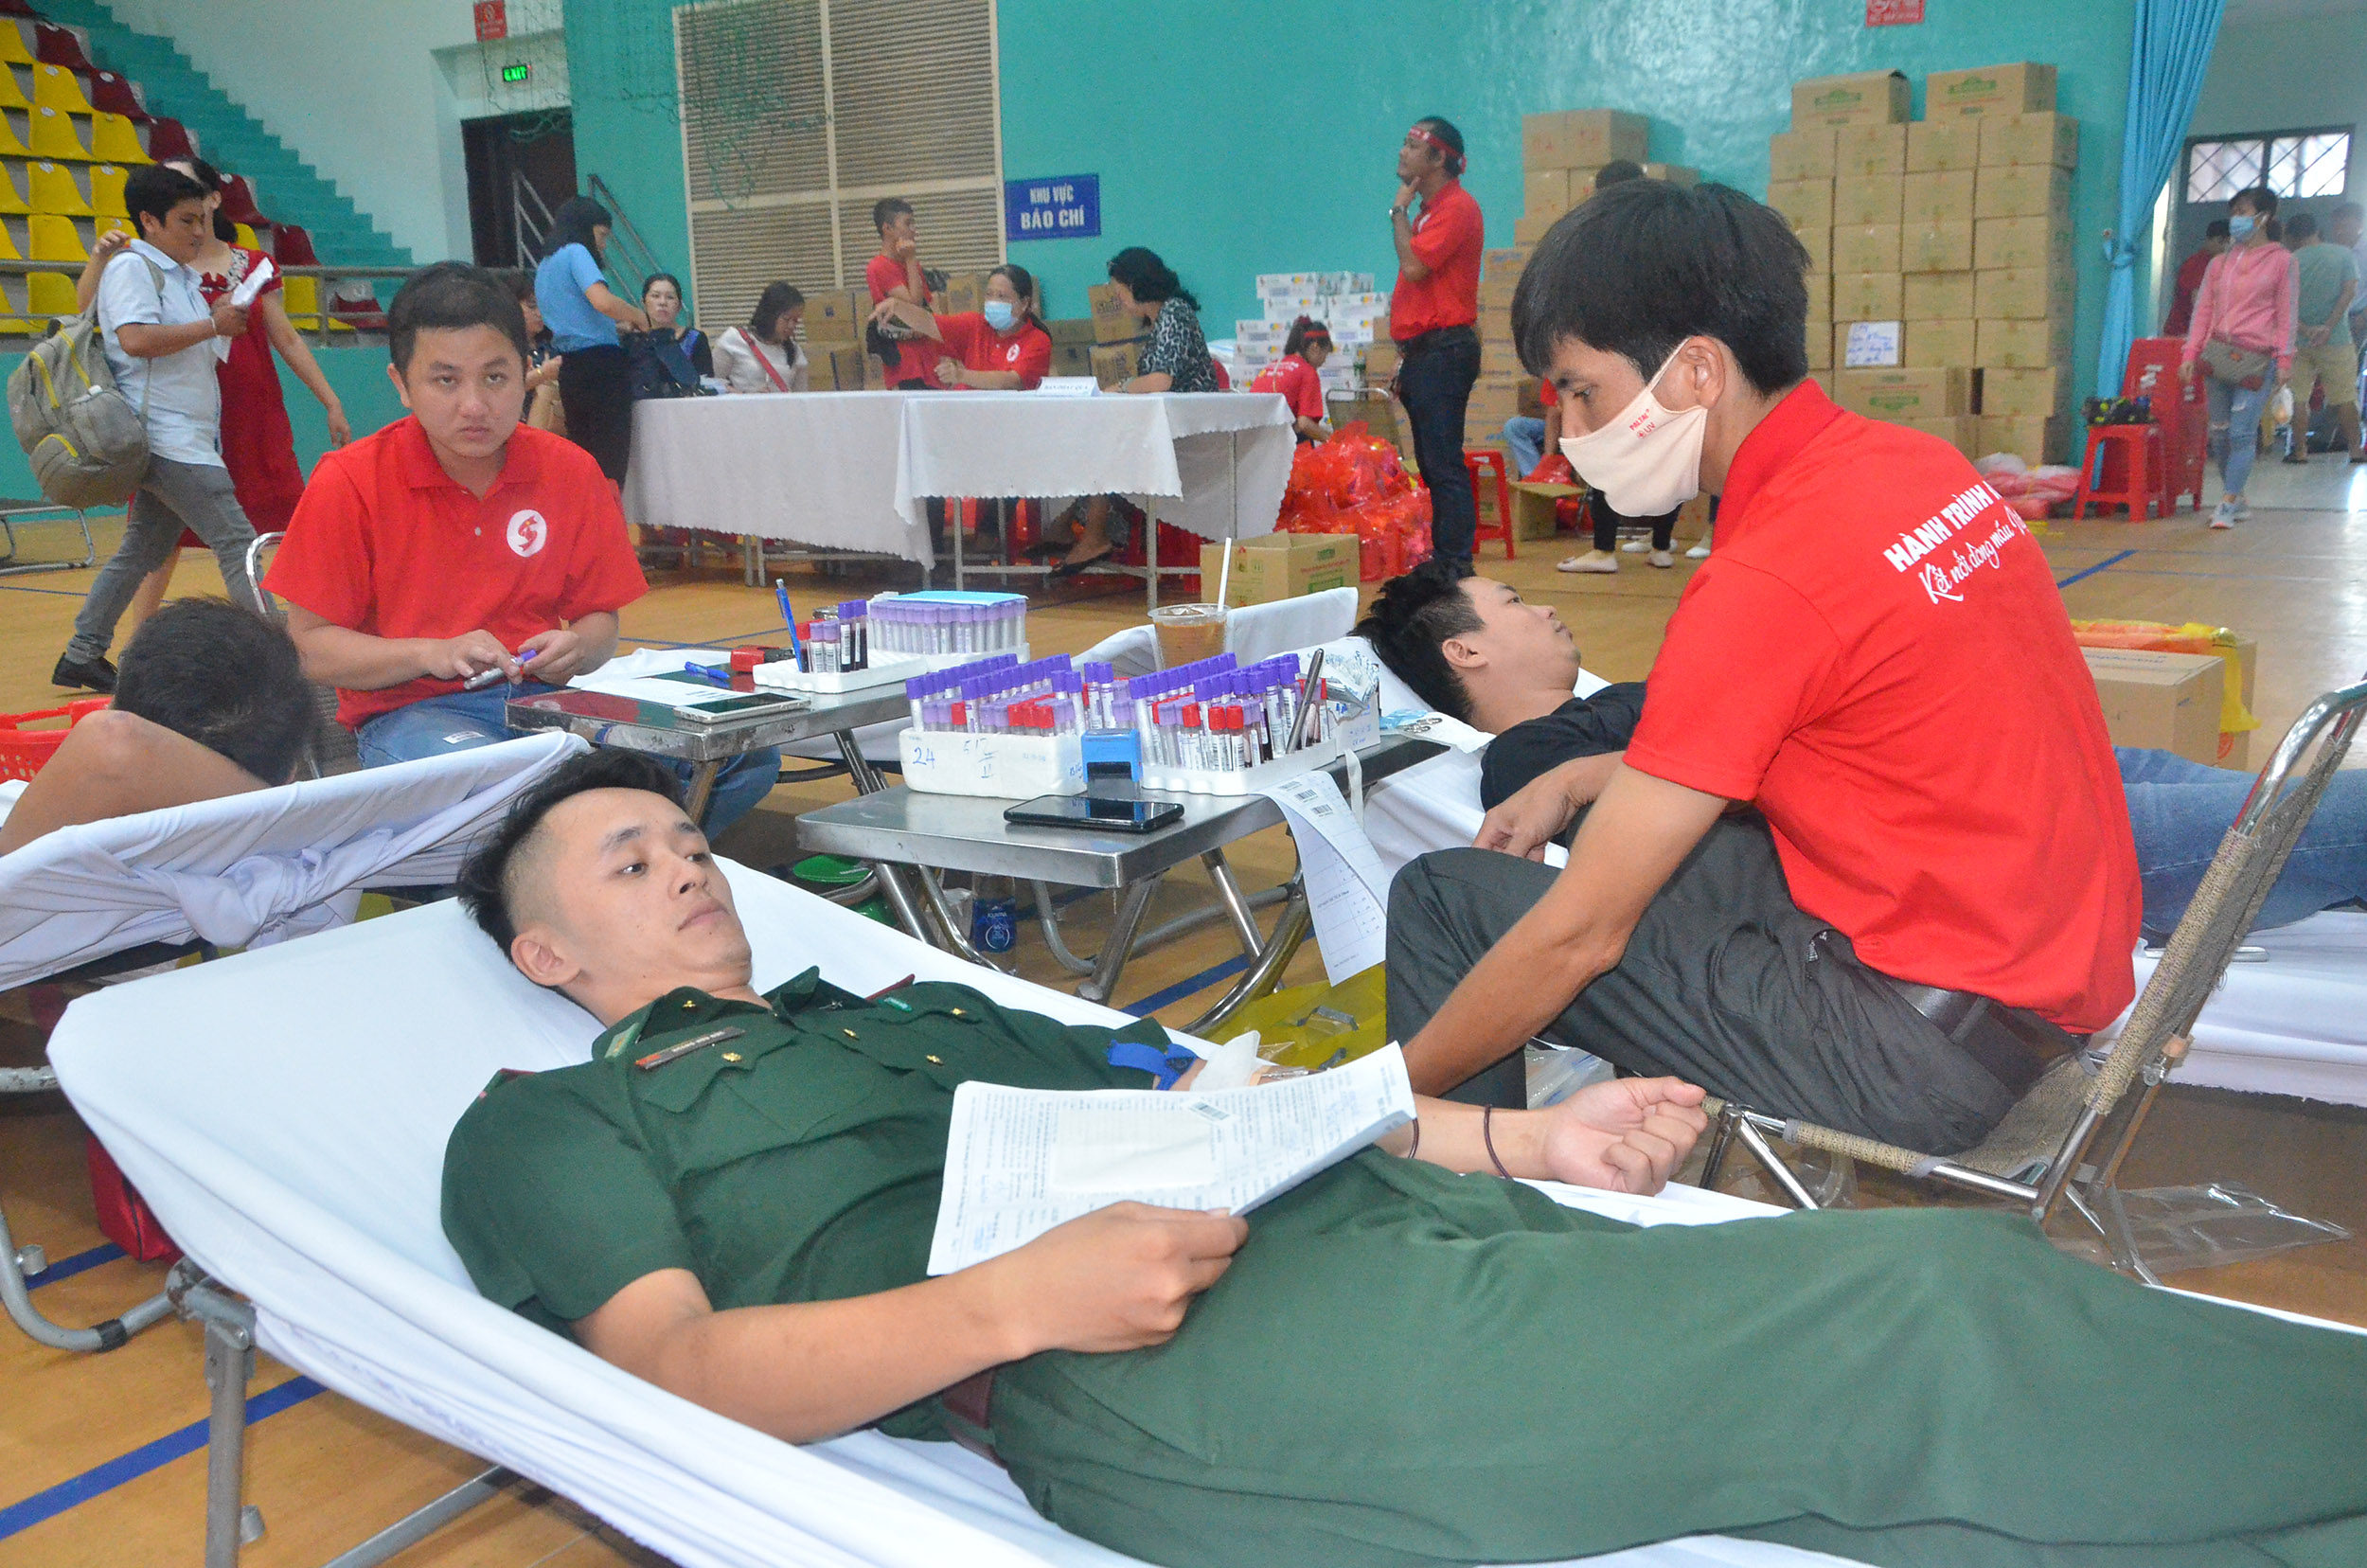 Chiến sĩ khối lực lượng vũ trang tham gia hiến máu tình nguyện tại chương trình “Hành trình Đỏ”.